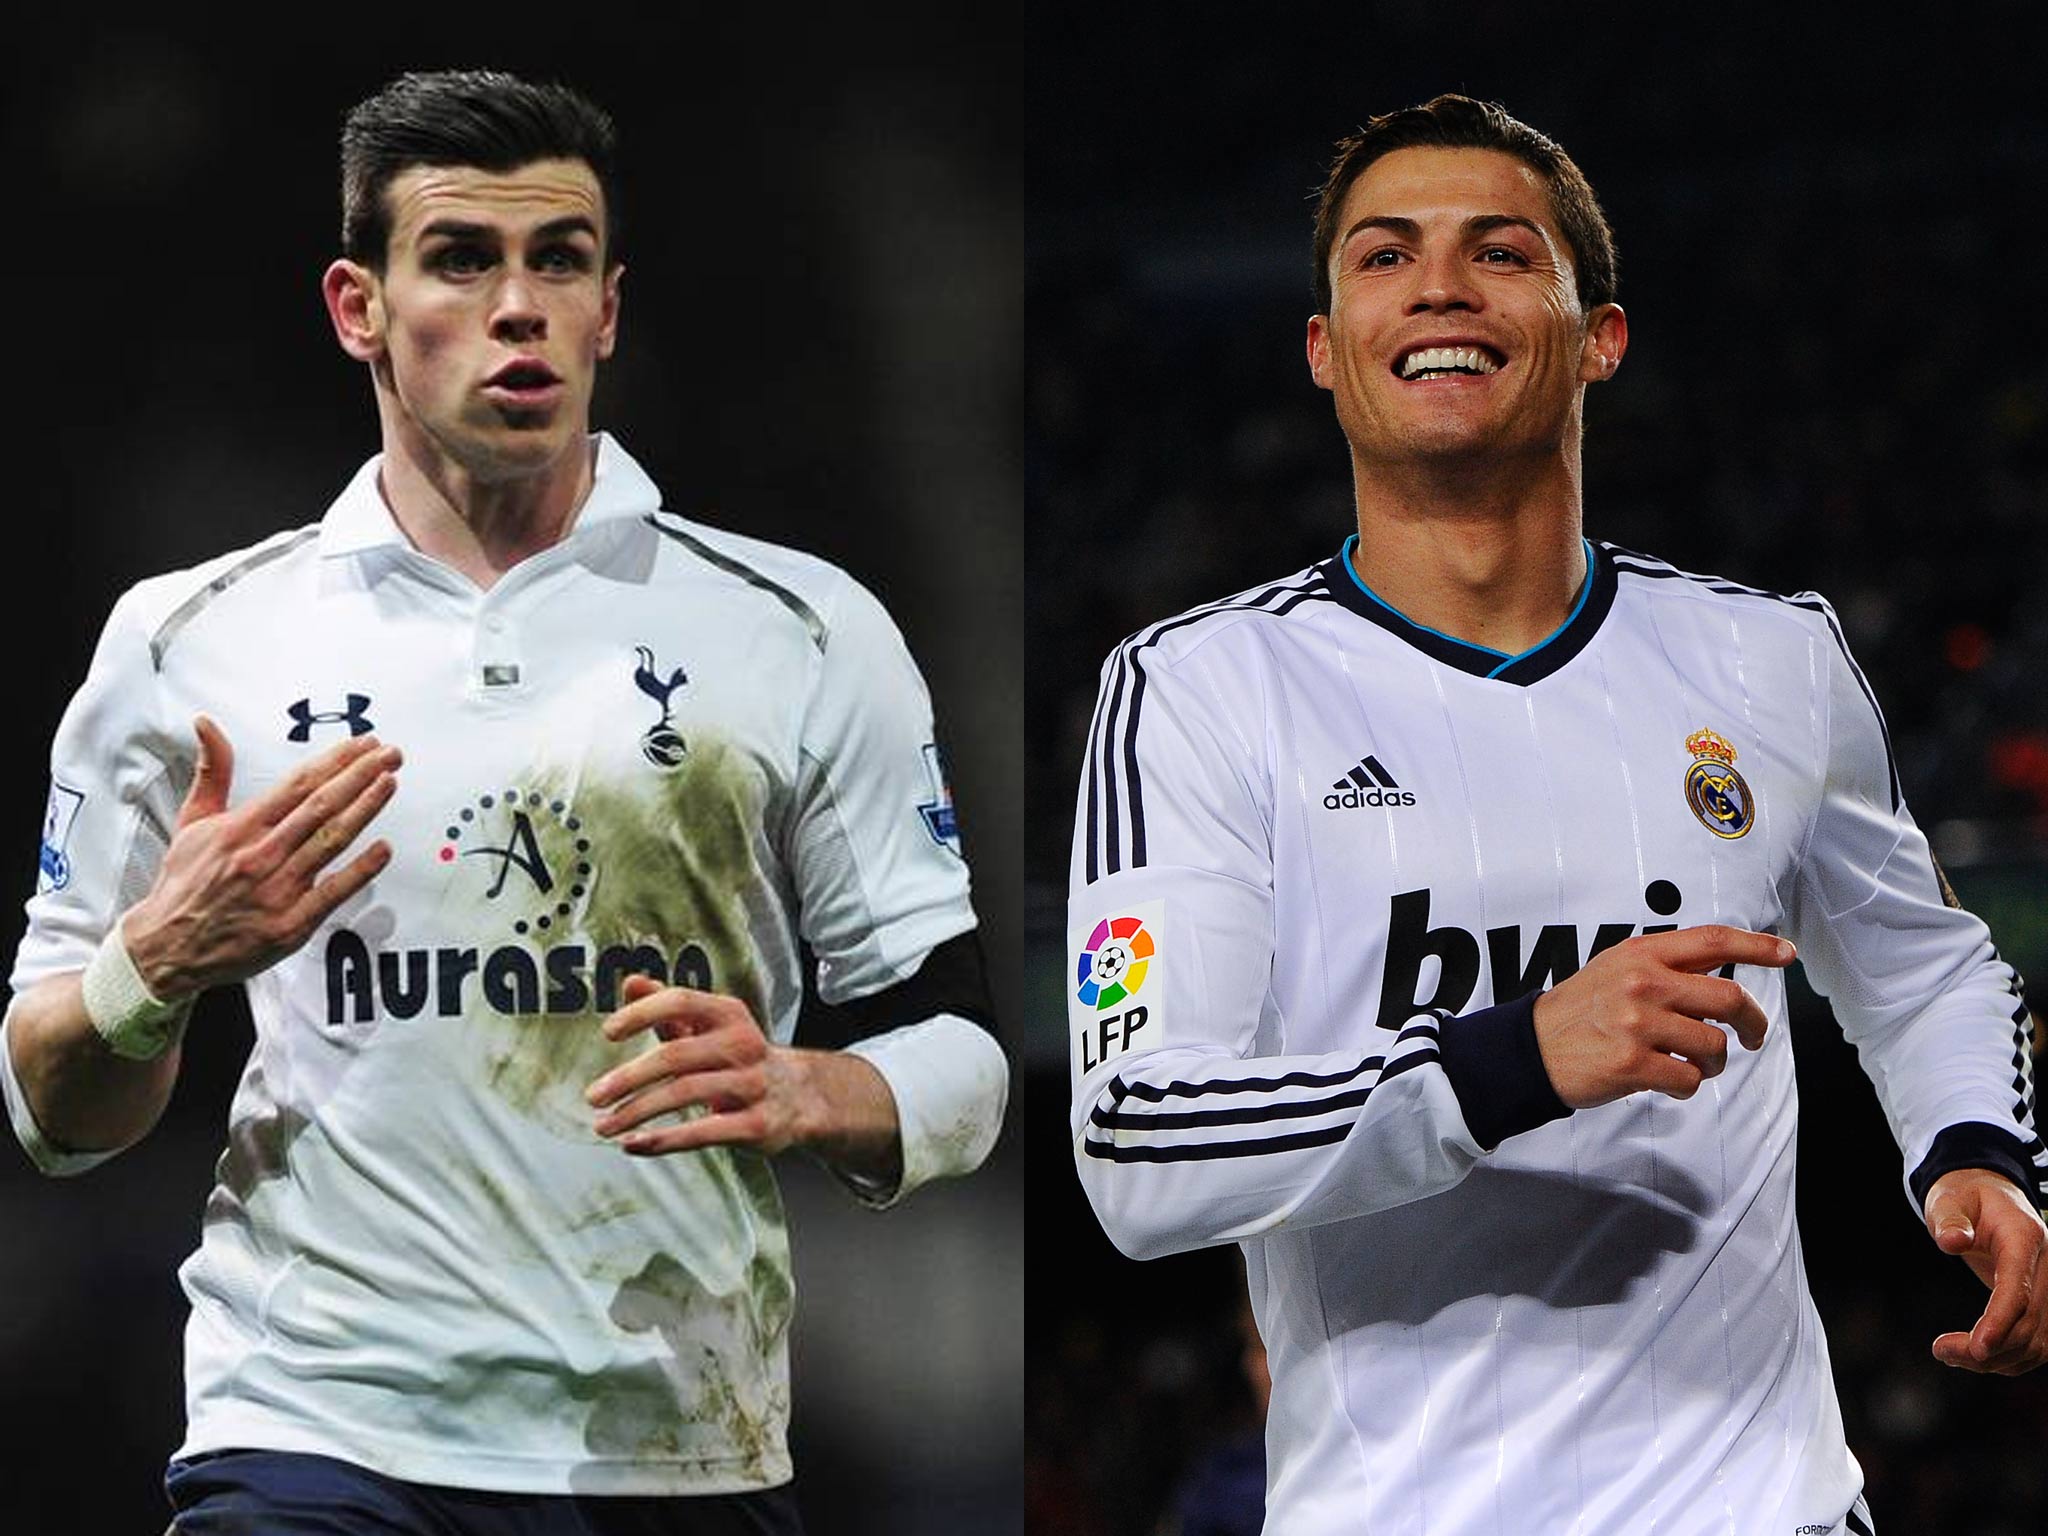 Gareth Bale and Cristiano Ronaldo